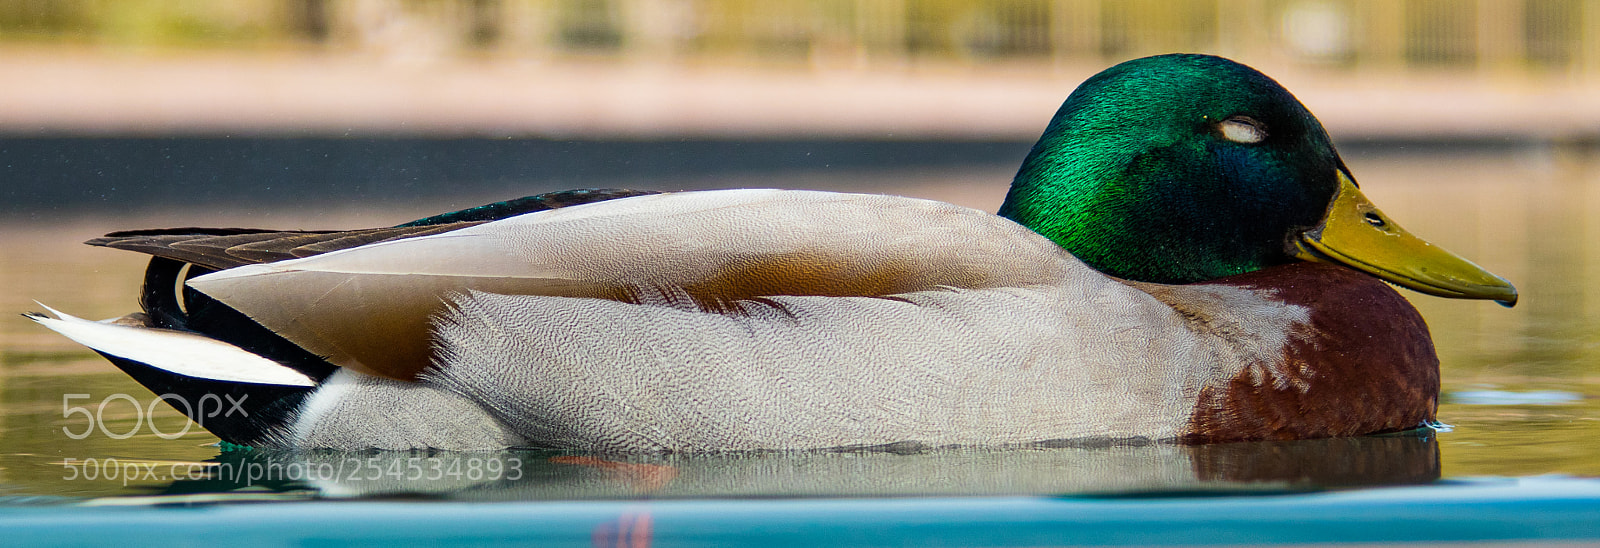 Canon EOS 80D sample photo. Sleeping duck photography